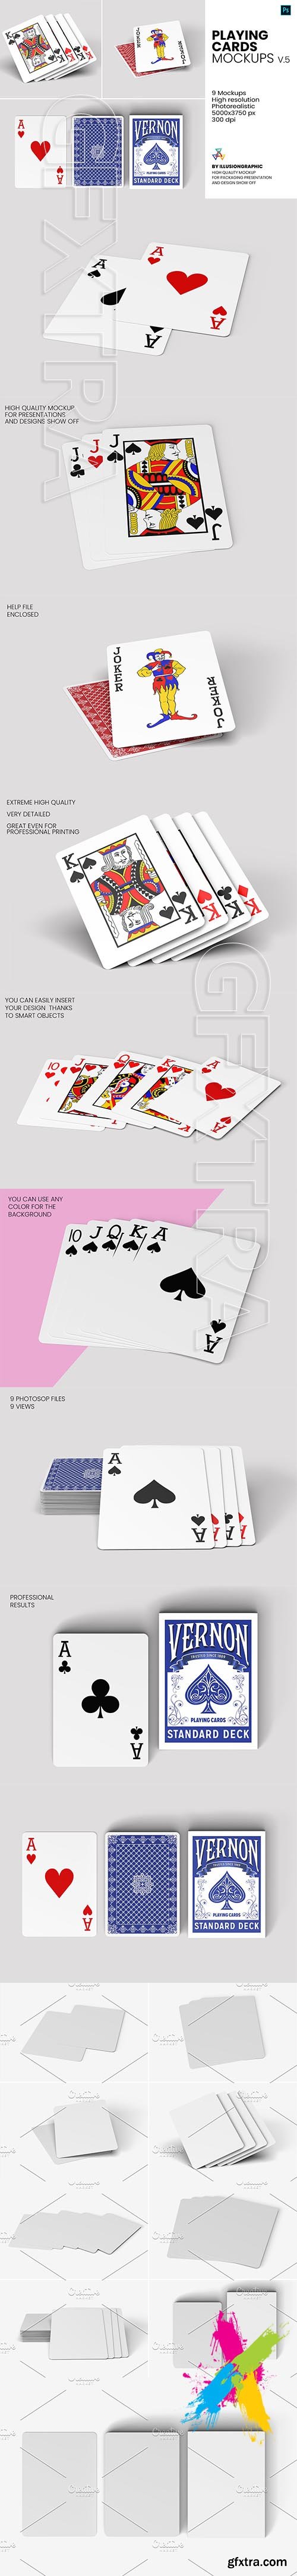 CreativeMarket - Playing Cards Mockups - v.5 5793117